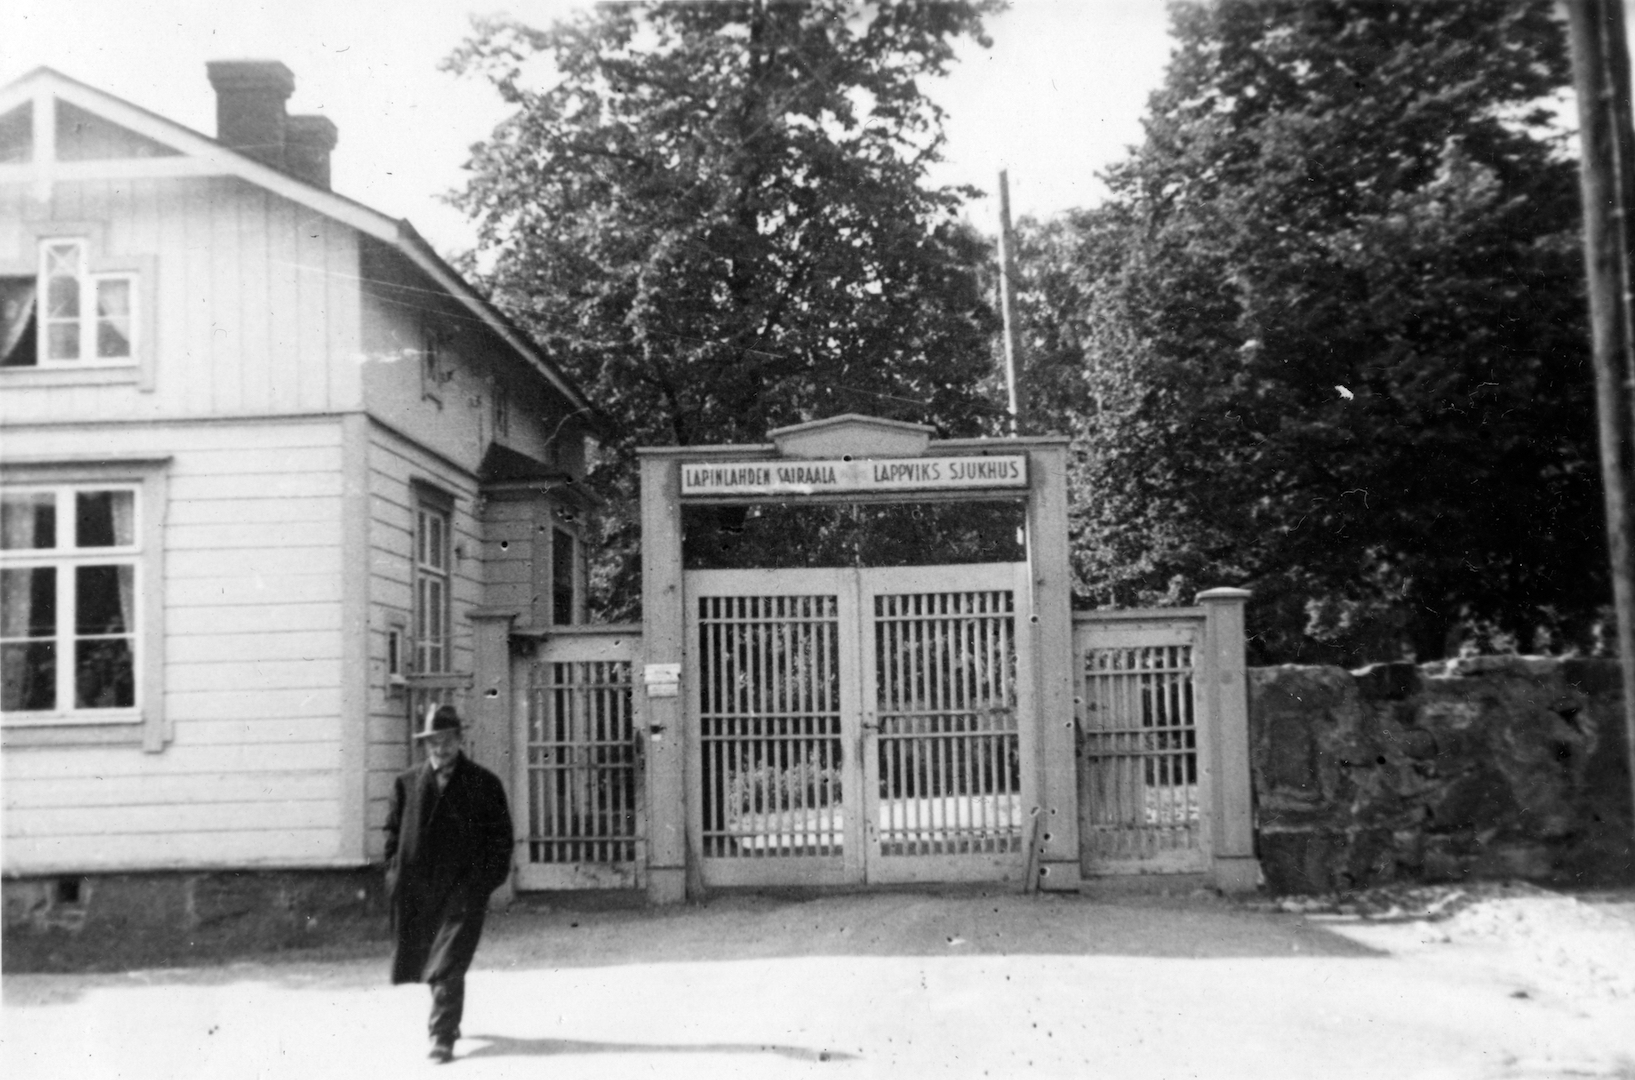 Lapinlahden sairaala-alueelle johtava portti ja portinvartijan tupa, joka on puinen asuinrakennus. Portin päällä on teksti "LAPINLAHDEN SAIRAALA LAPPVIKS SJUKHUS". Portin oikealla puolella on kivimuuri. Portin suunnasta kävelee hattupäinen mies. 1930-luku.